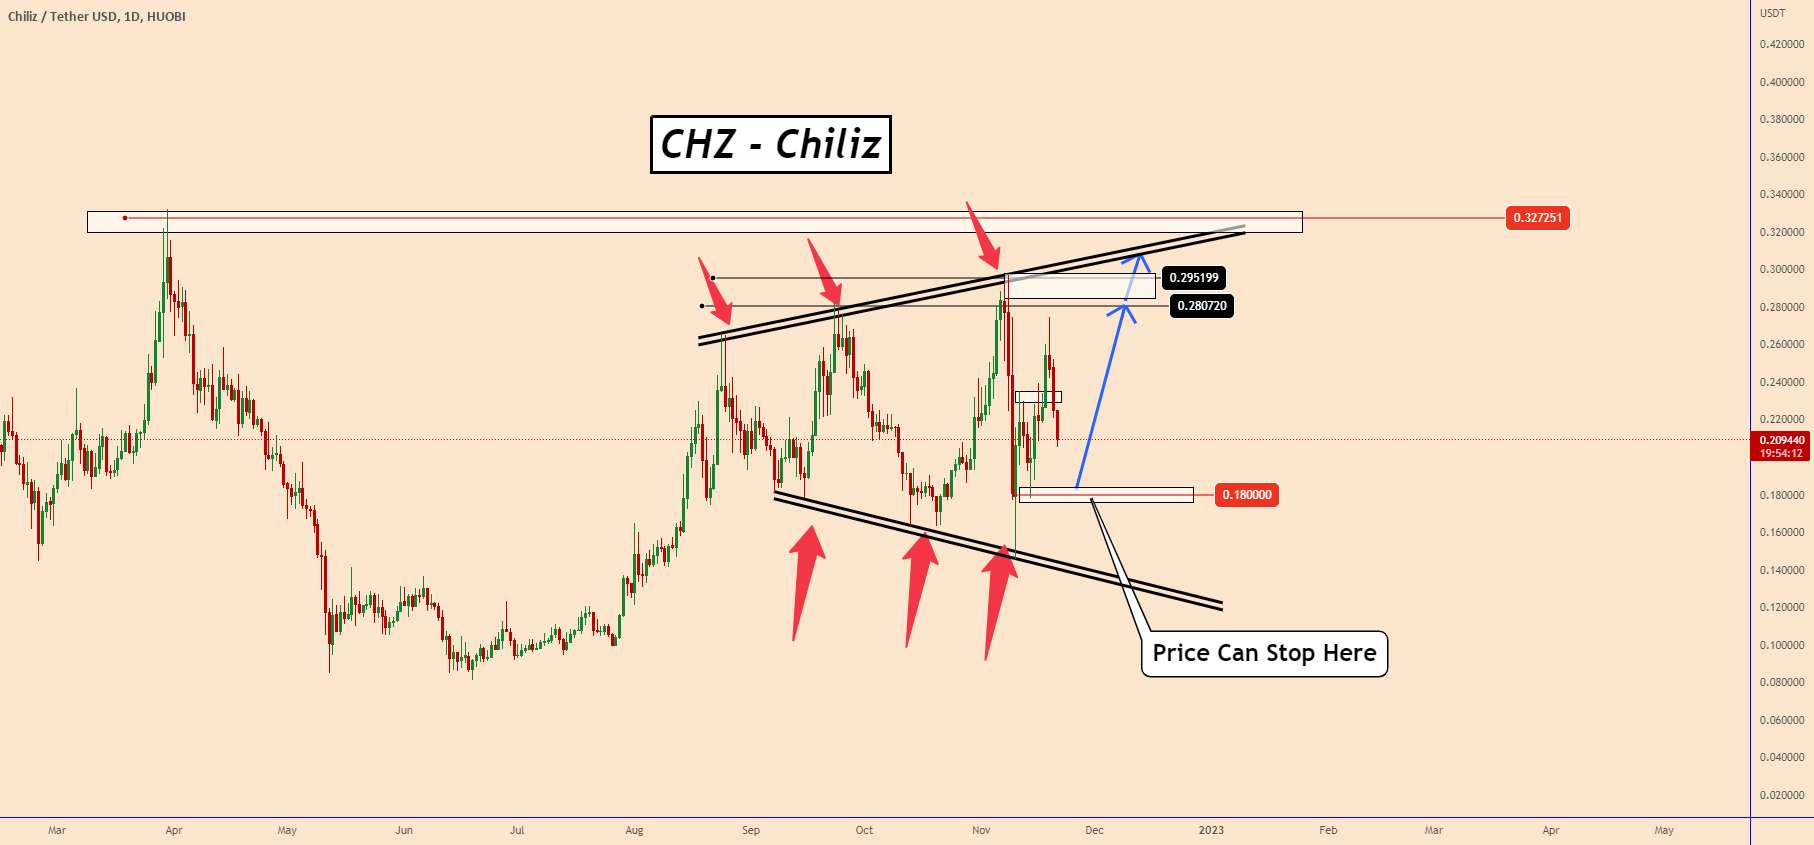  تحلیل چیلیز - CHZ - Chiliz: افزایش قیمت احتمالی نزدیک به 0.180000